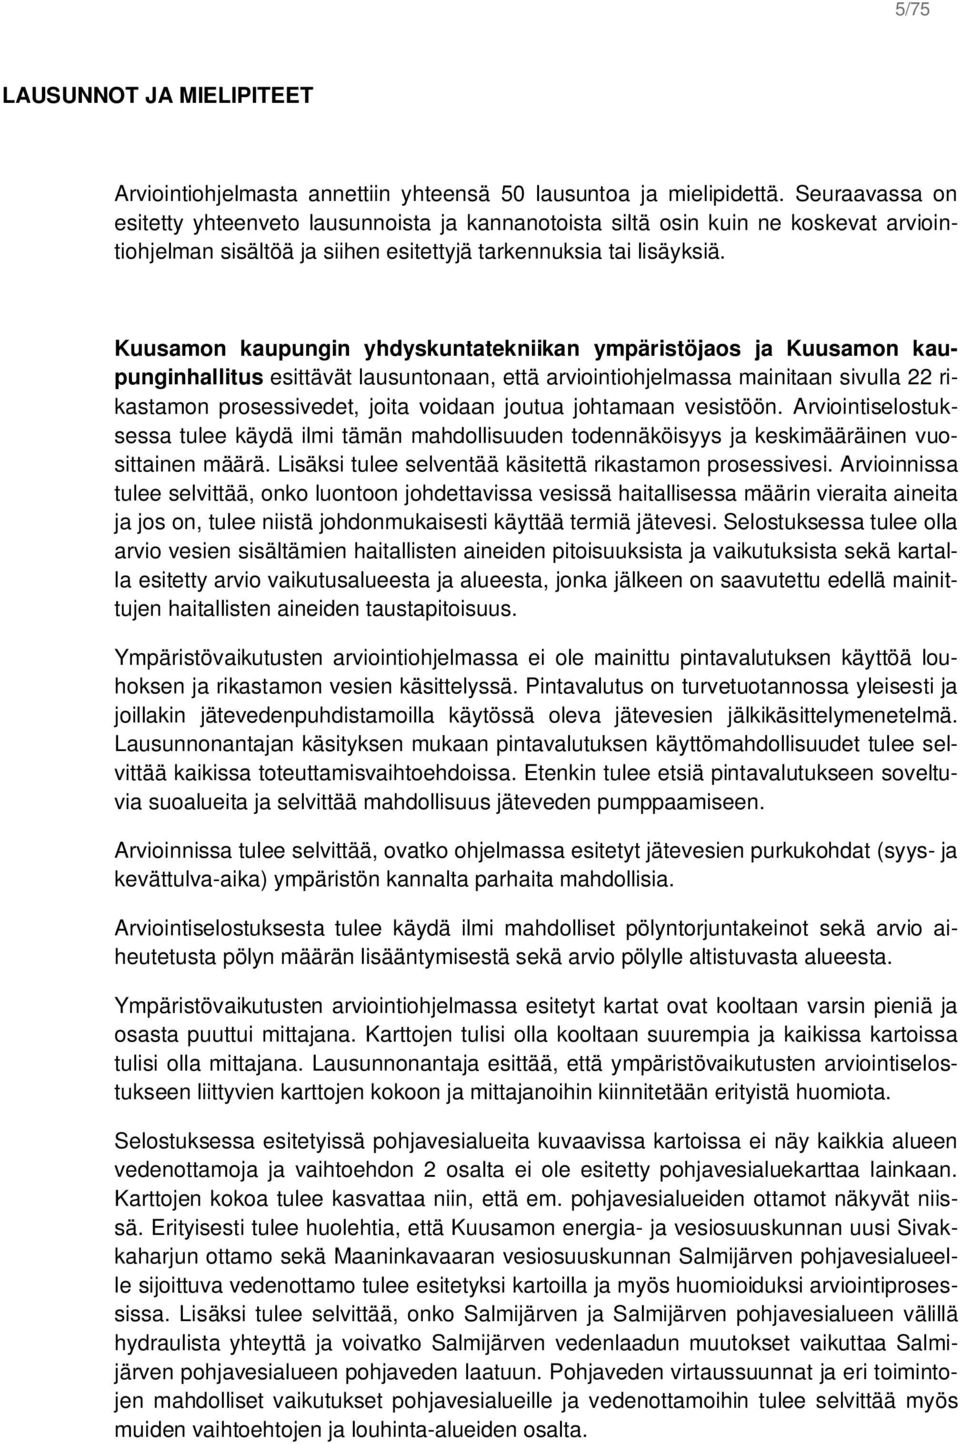 Kuusamon kaupungin yhdyskuntatekniikan ympäristöjaos ja Kuusamon kaupunginhallitus esittävät lausuntonaan, että arviointiohjelmassa mainitaan sivulla 22 rikastamon prosessivedet, joita voidaan joutua